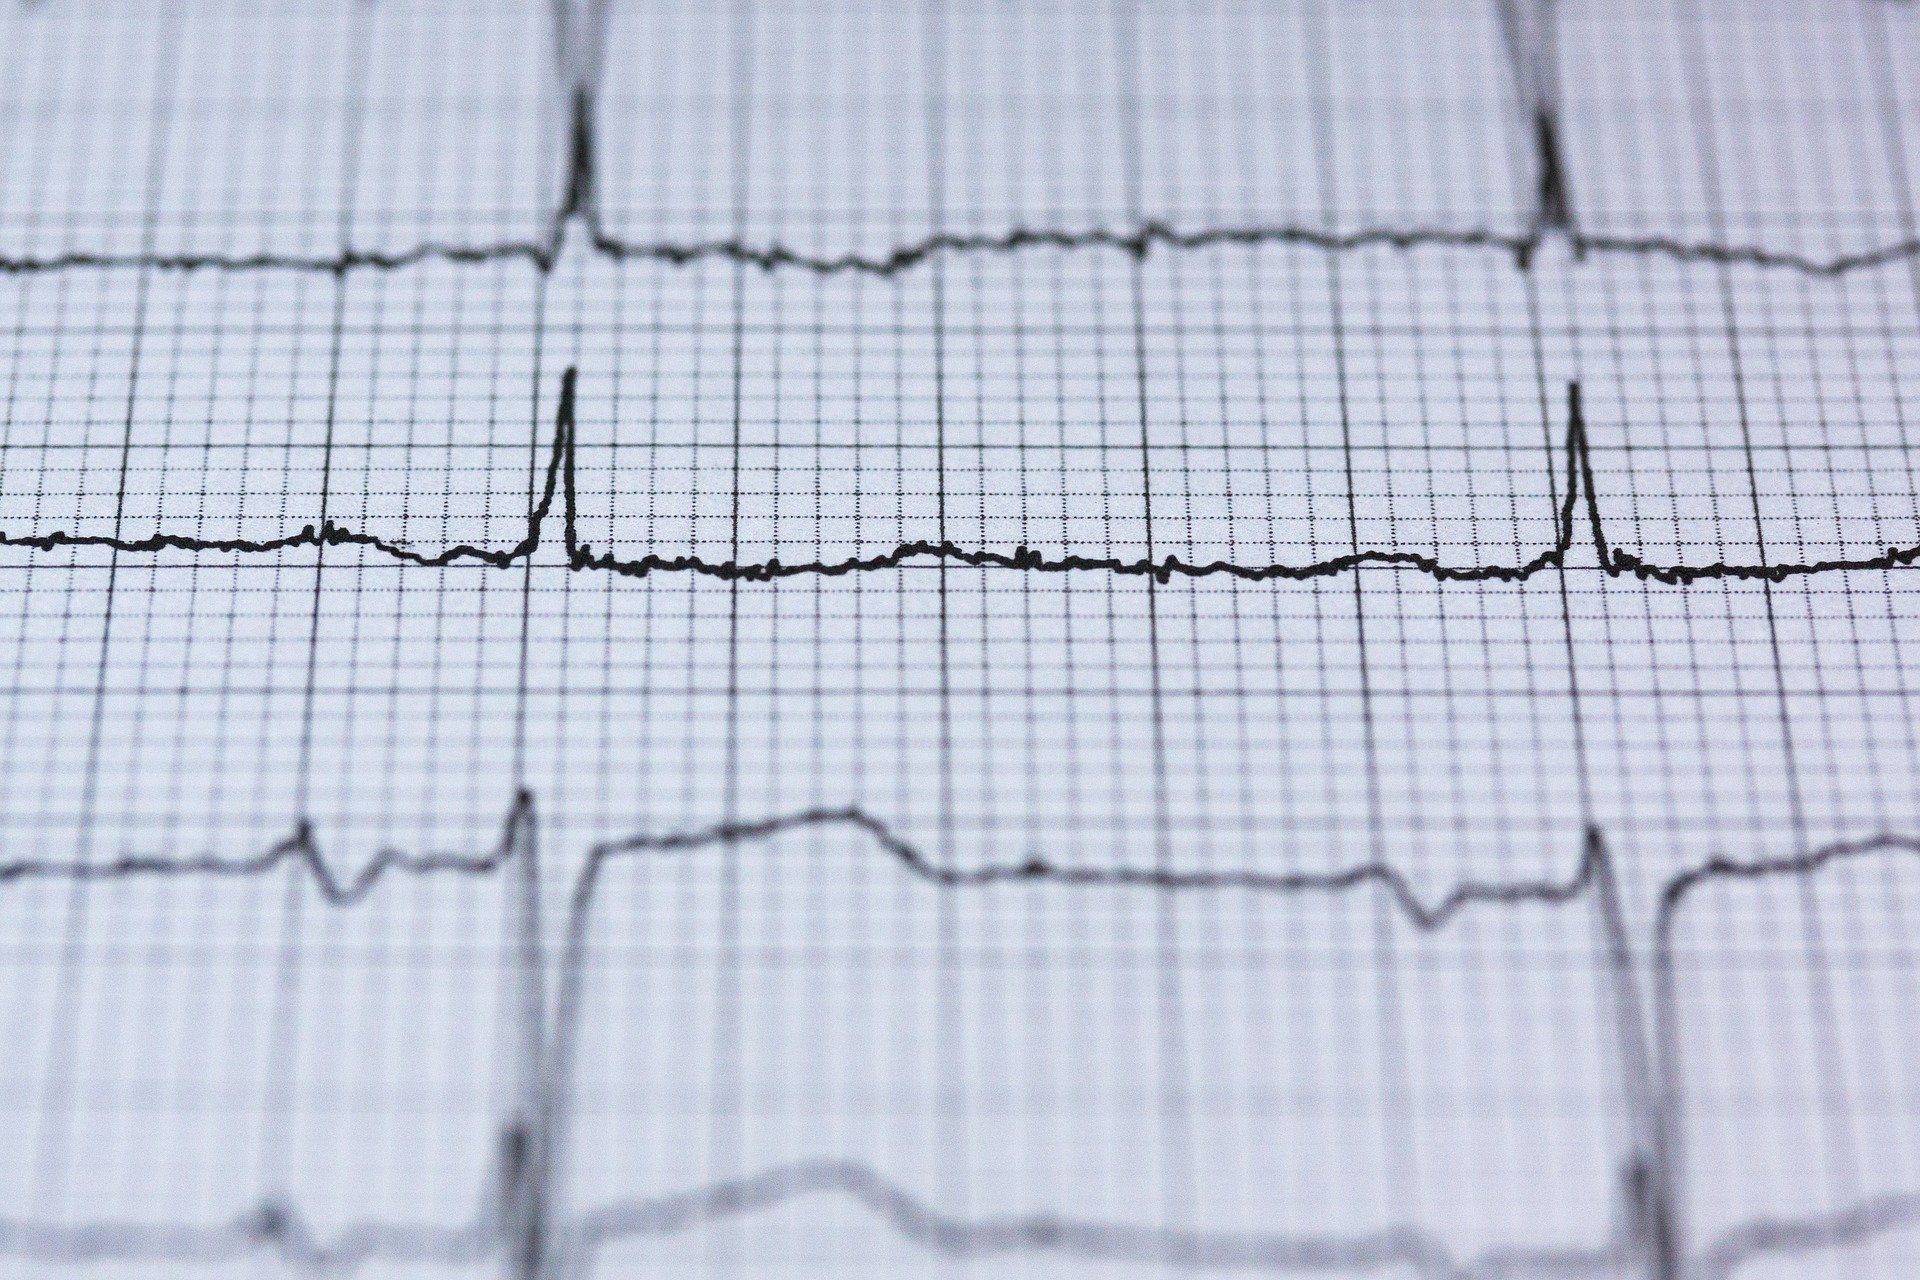 في المستقبل ، يمكن لنبضات القلب أن تحل محل بصمات الأصابع في التعرف على القياسات الحيوية 1